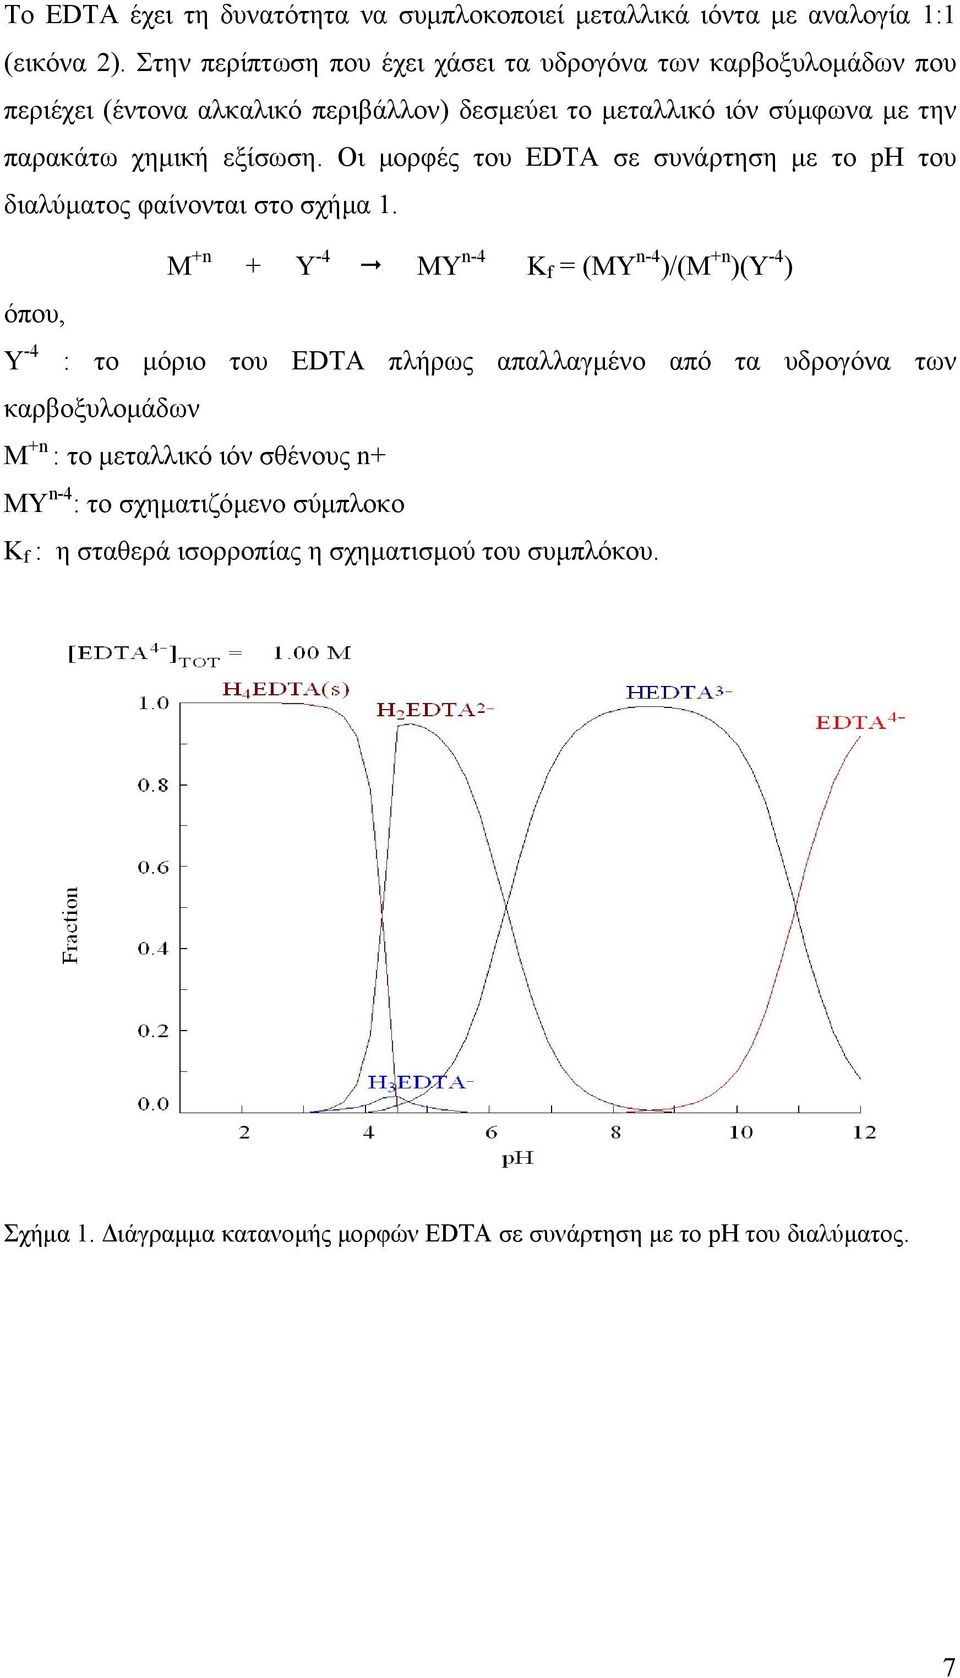 Οι µορφές του EDTA σε συνάρτηση µε το ph του διαλύµατος φαίνονται στο σχήµα 1.